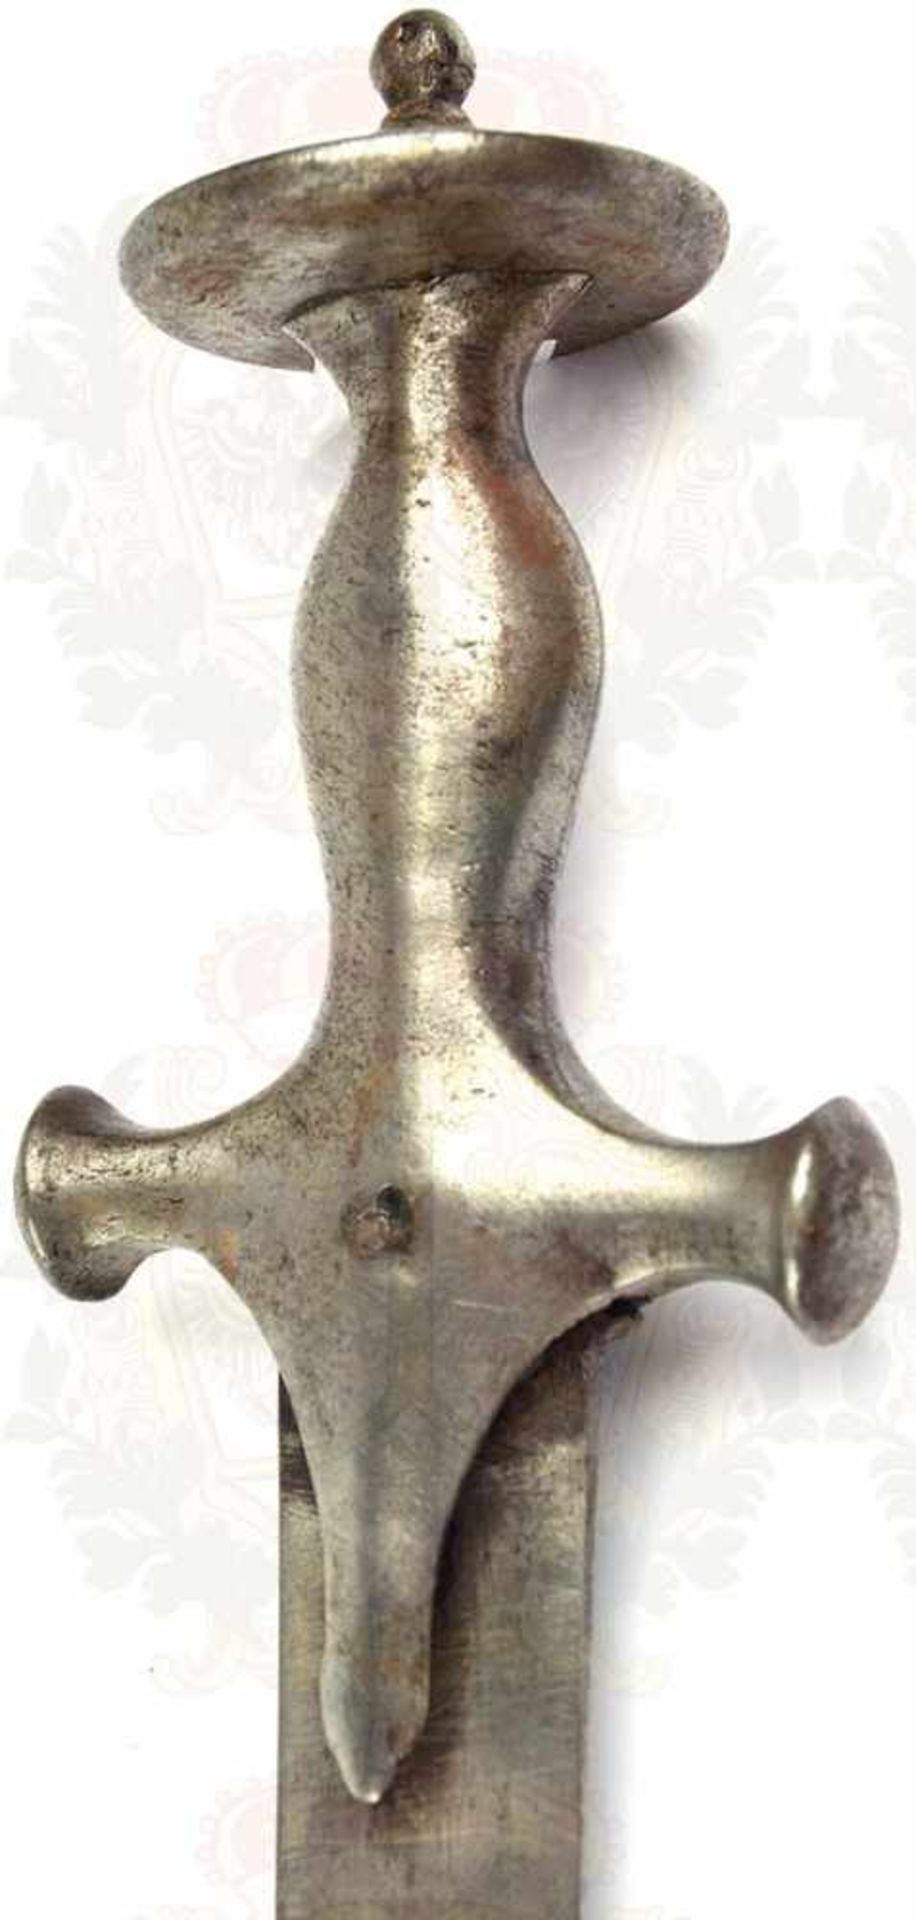 TULWAR, stark gekrümmte Keilklinge, etwas narbig u. fleckig, geputzt, L. 72 cm, schlichtes Eisen- - Bild 2 aus 2